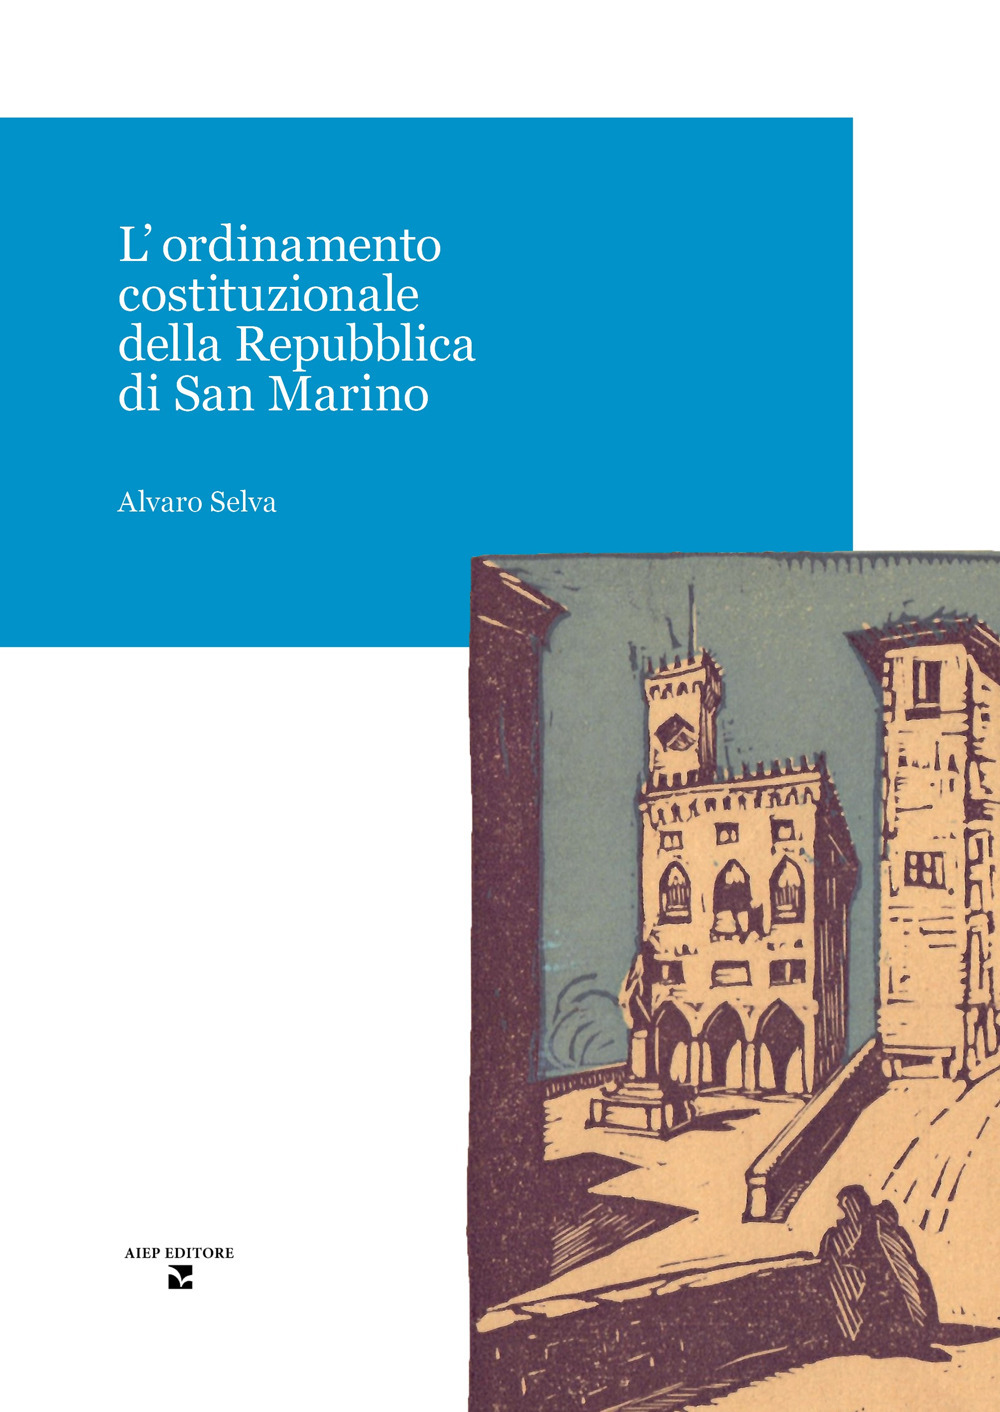 L'ordinamento costituzionale della Repubblica di San Marino